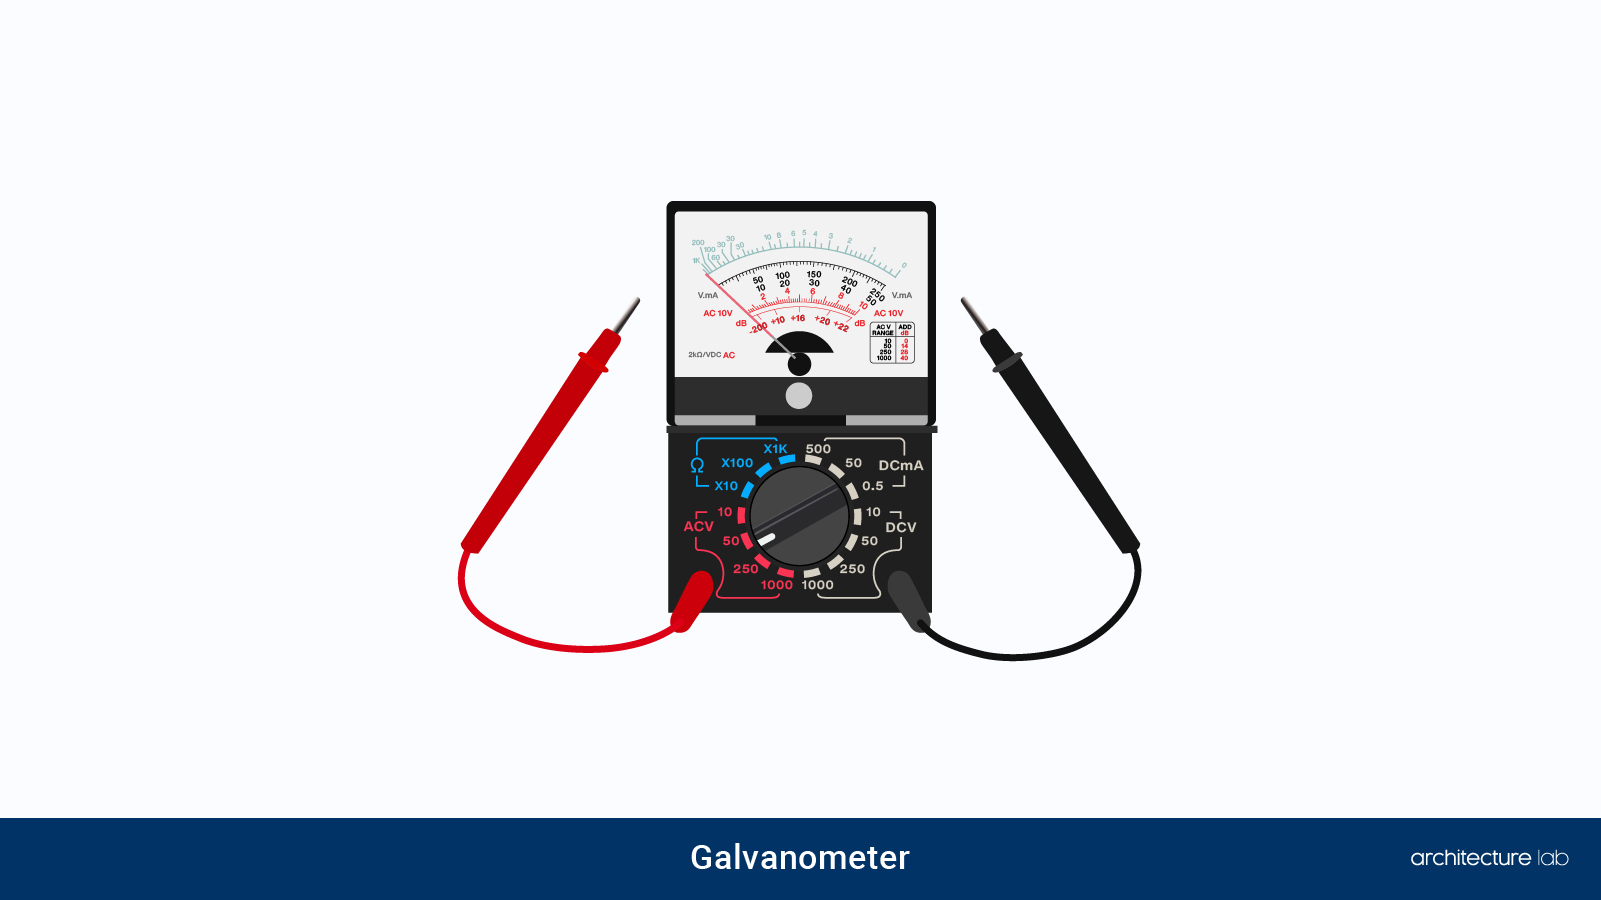 24. Galvanometer